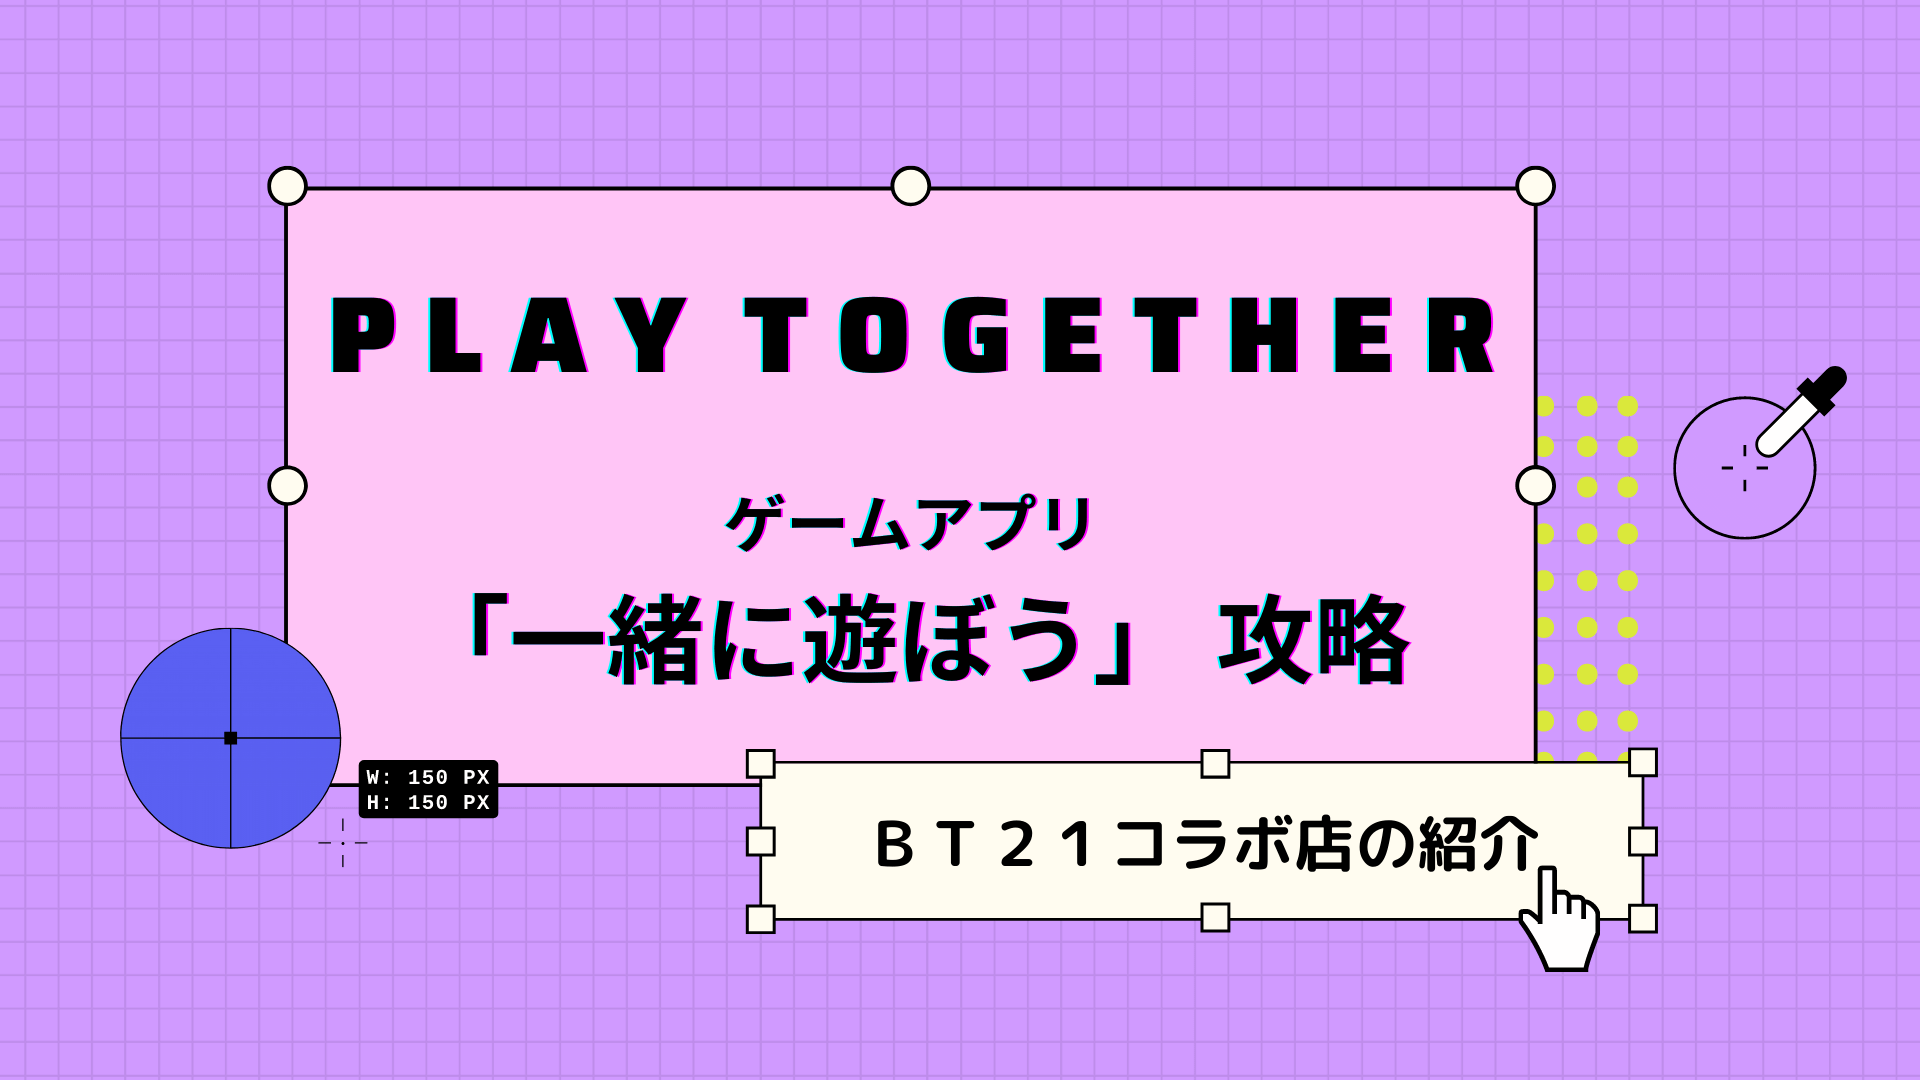 playtogether-bt21-collaboration